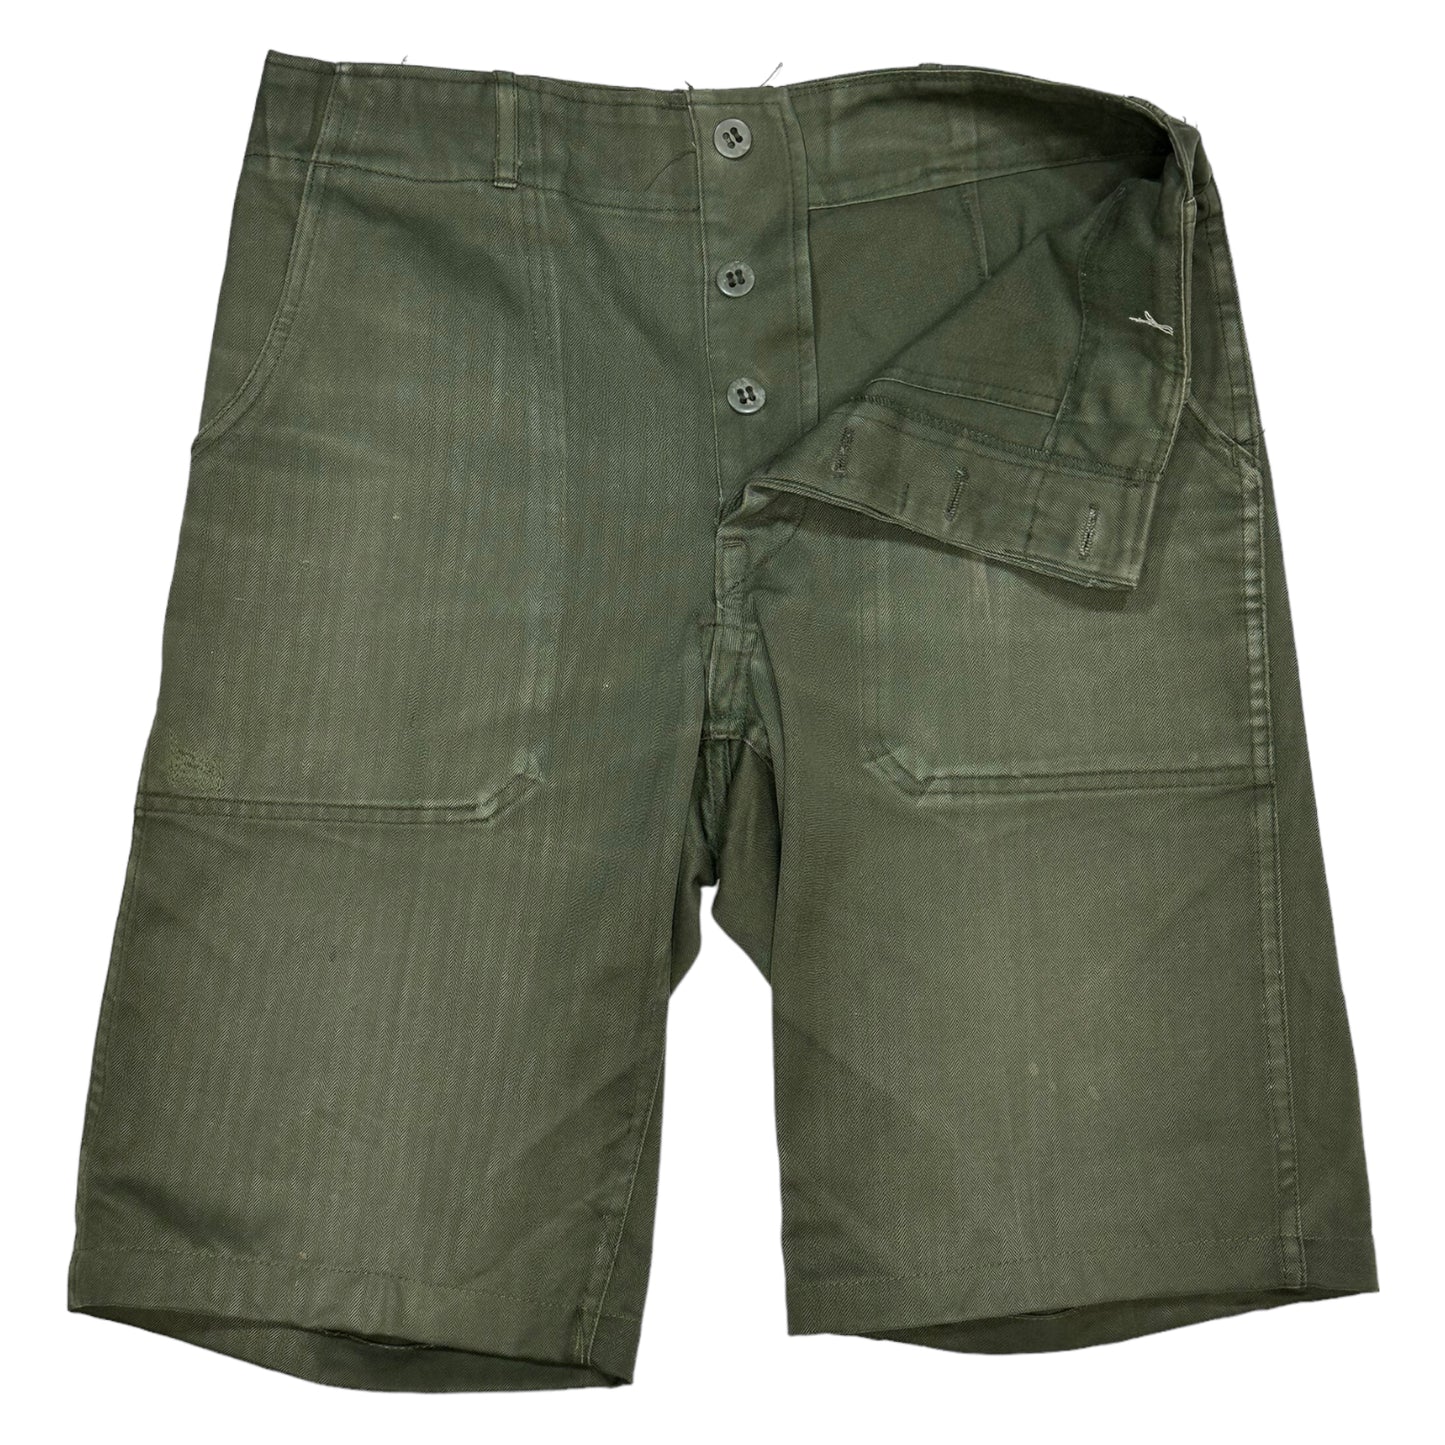 
                  
                    Vintage OG 107 Shorts - Size 30
                  
                